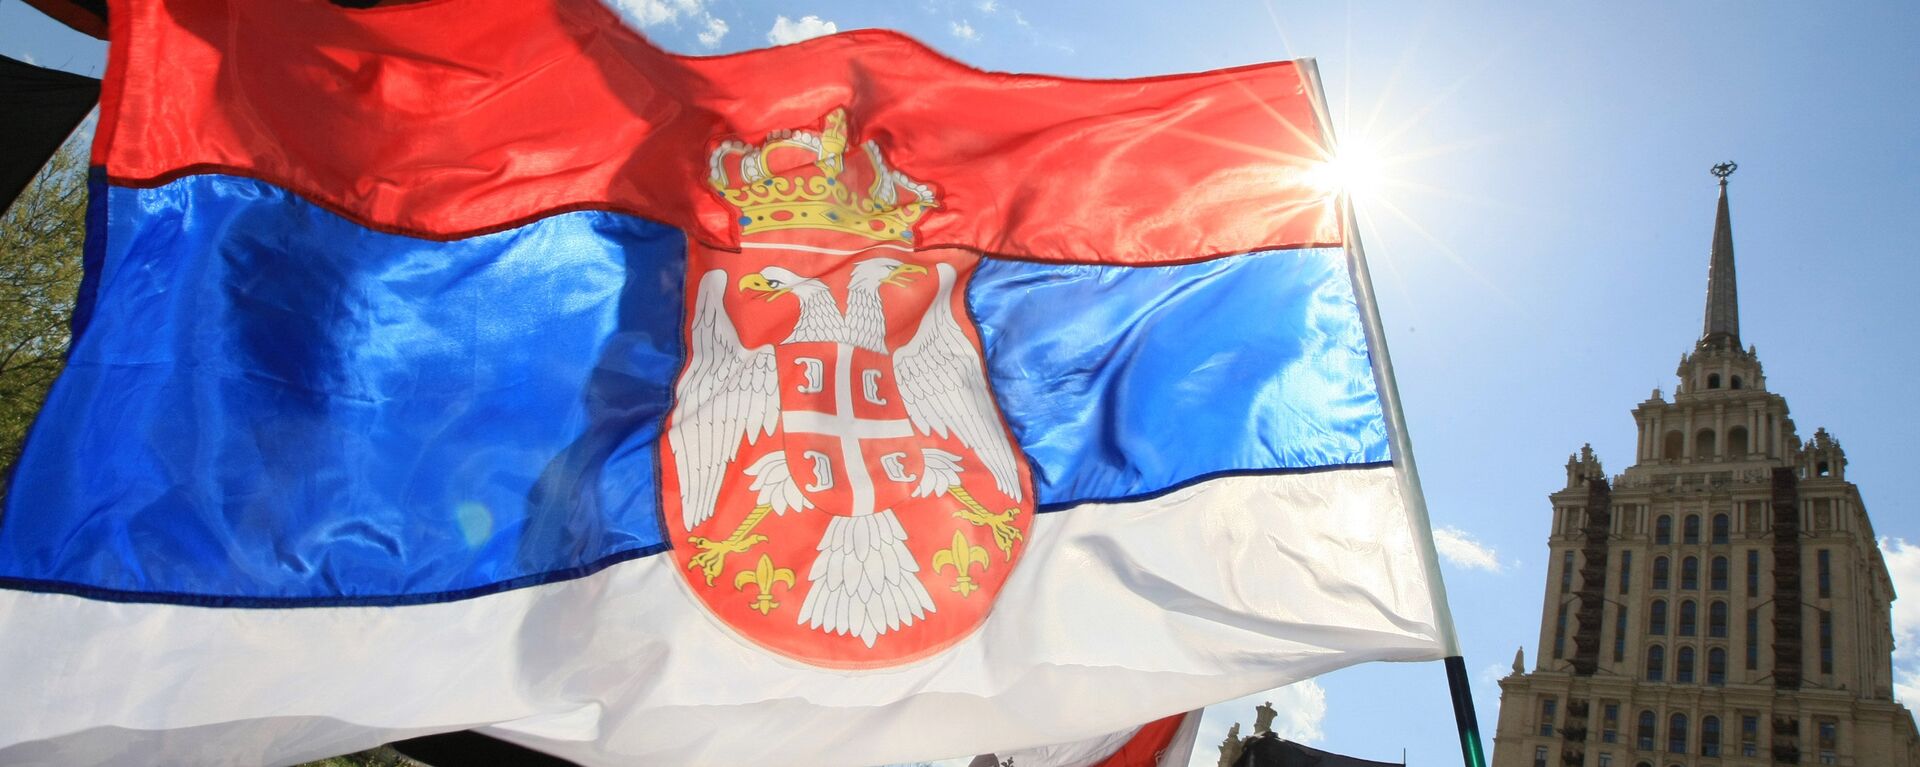 La bandera de Serbia - Sputnik Mundo, 1920, 16.04.2021